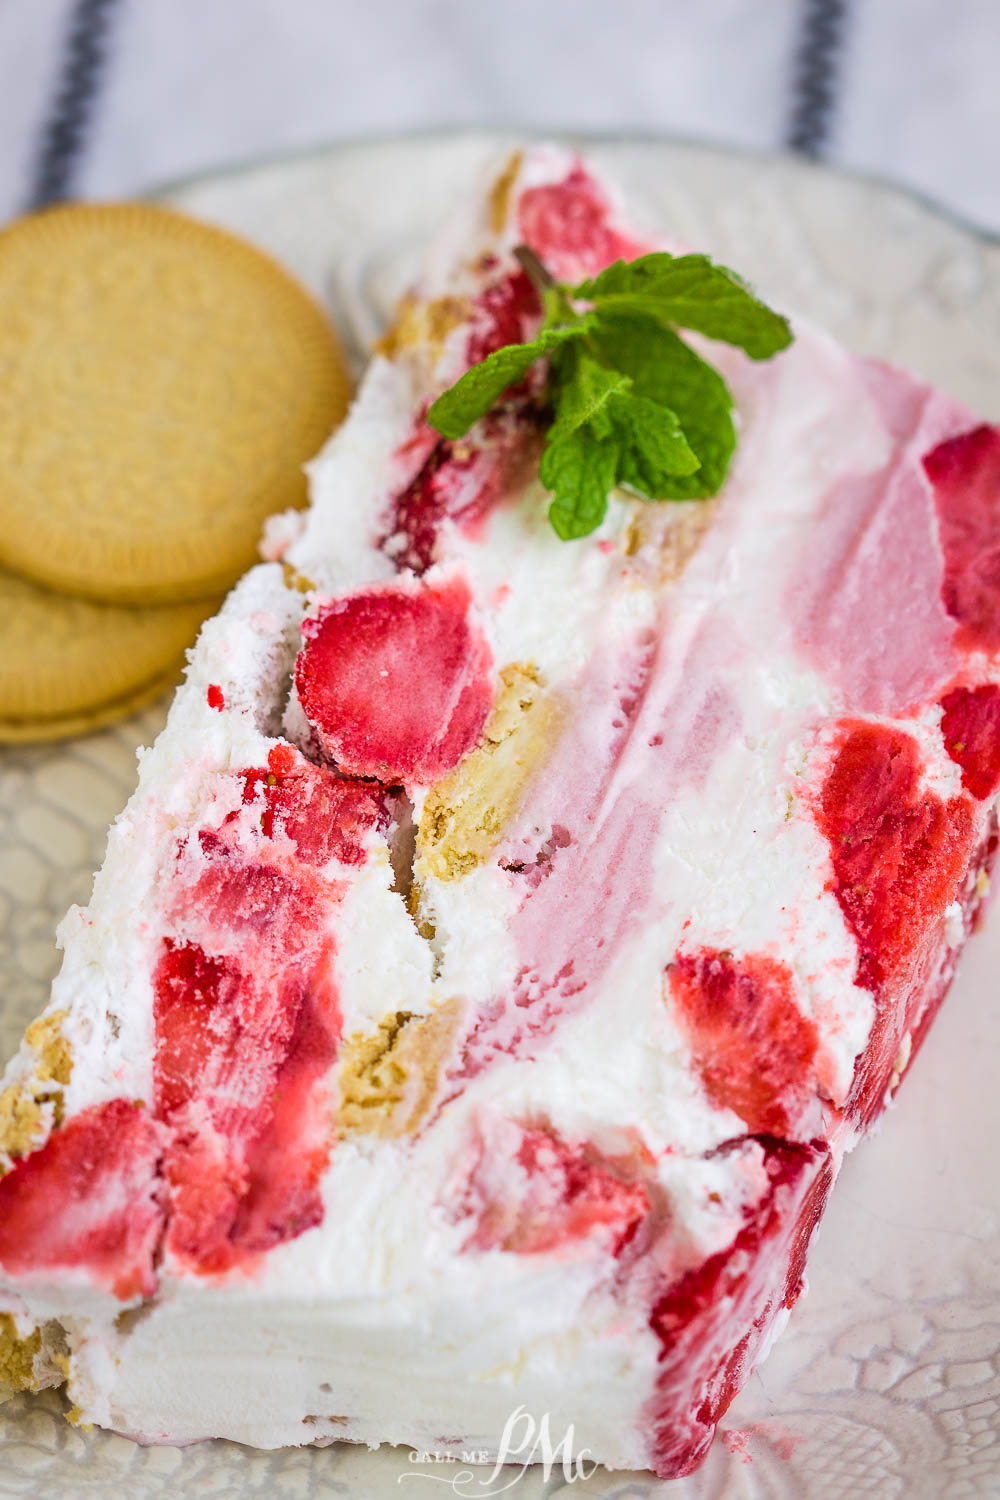 Strawberry Tiramisu Icebox Cake